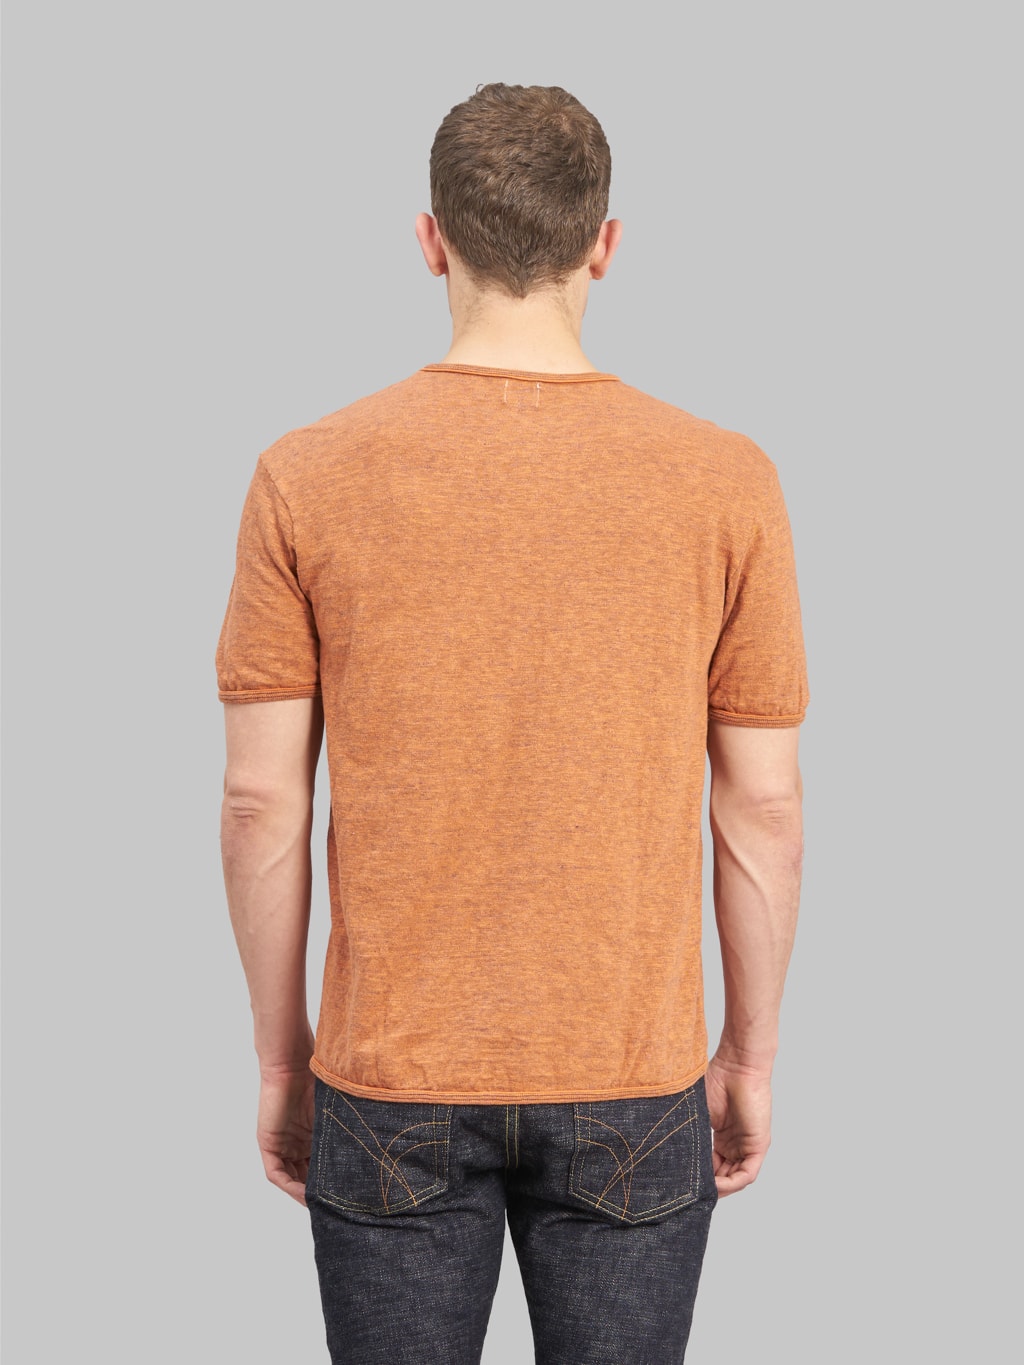 loop and weft super slub crewneck tshirt orange  back fit